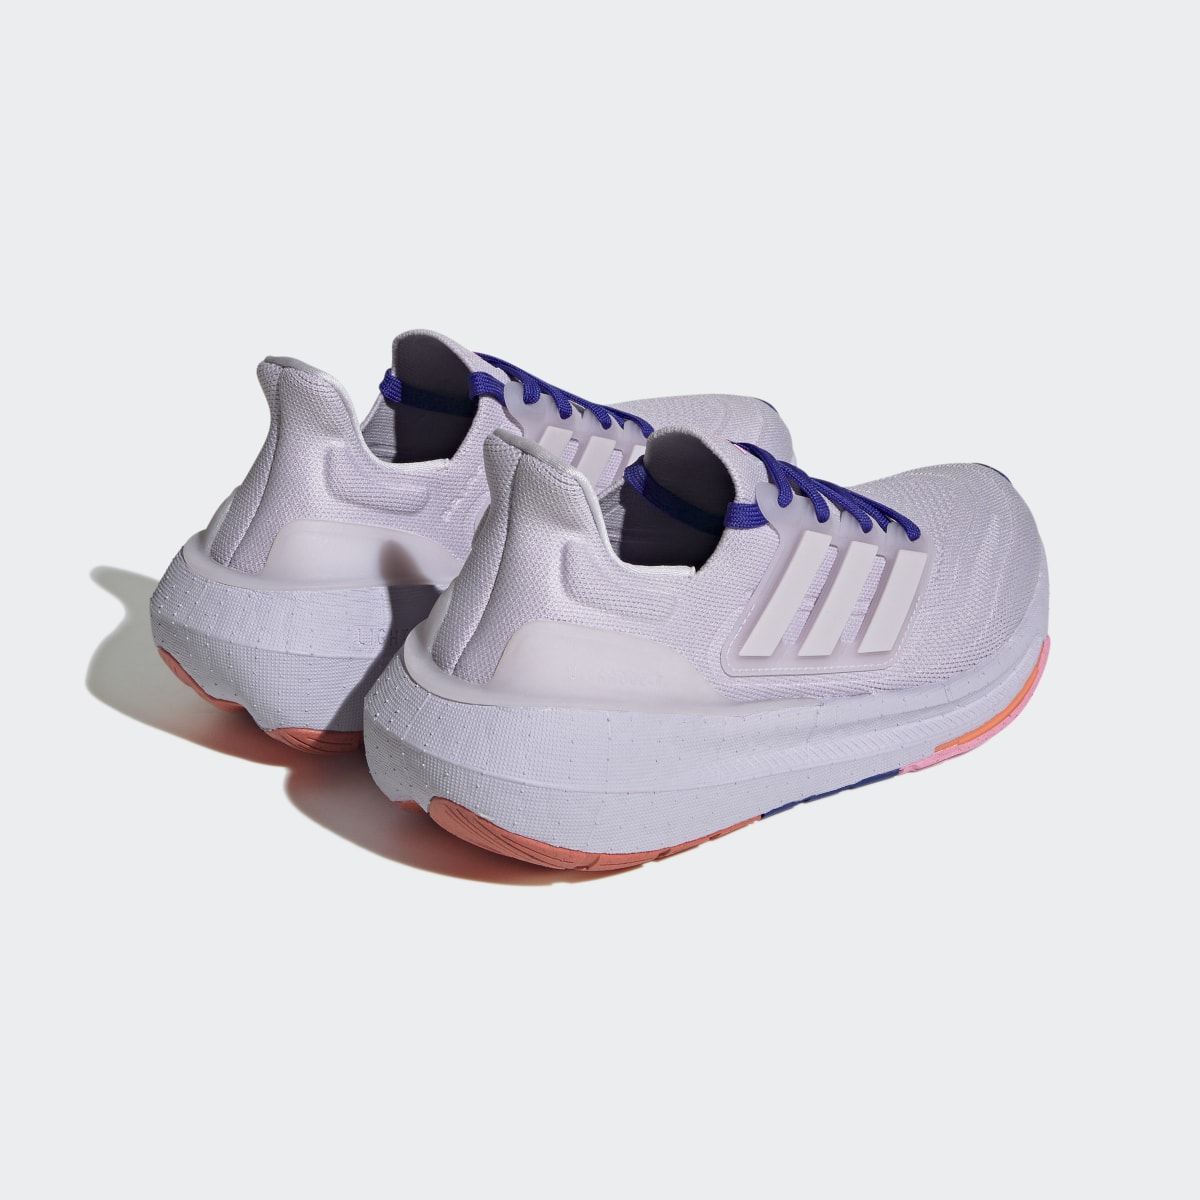 Adidas Ultraboost Light Running Shoes. 6